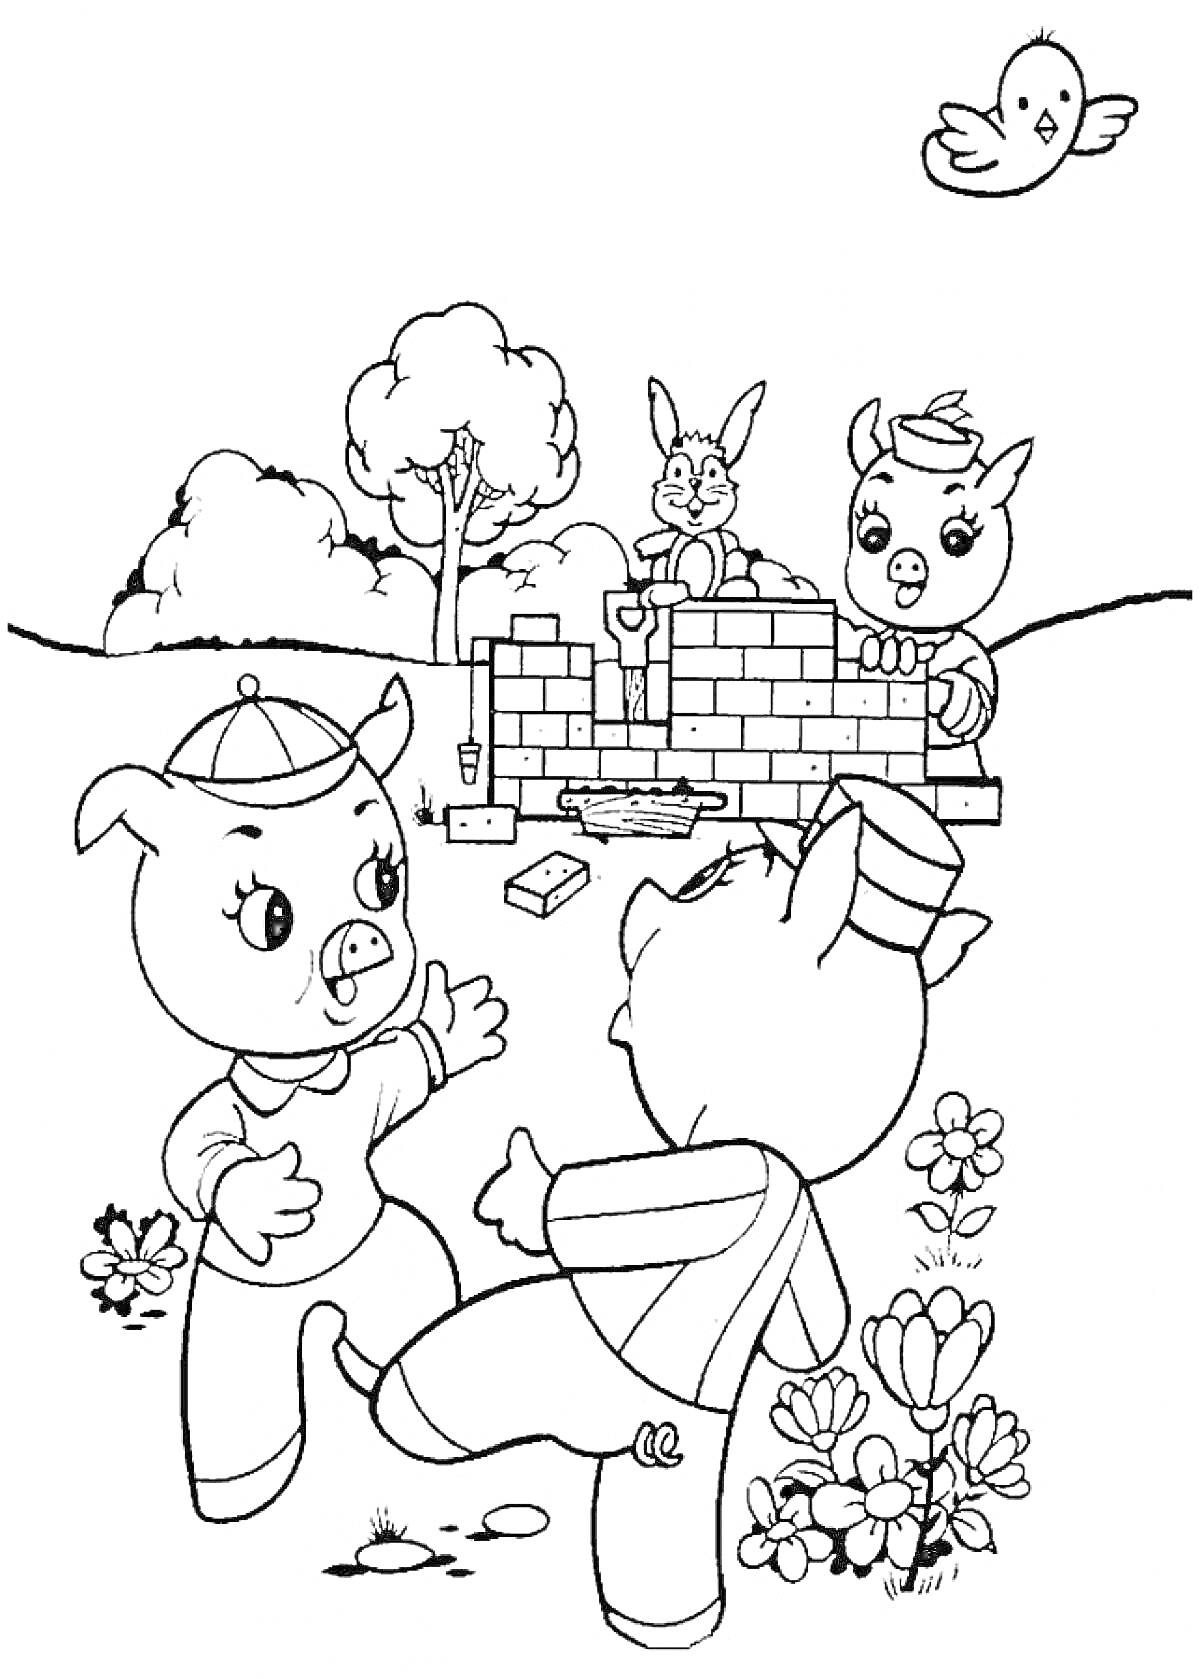 Раскраска Два поросенка играют, третий поросенок строит кирпичную стену, рядом стоит заяц, сверху летает птичка, дрова, лопата, дерево и цветы в окружающей среде